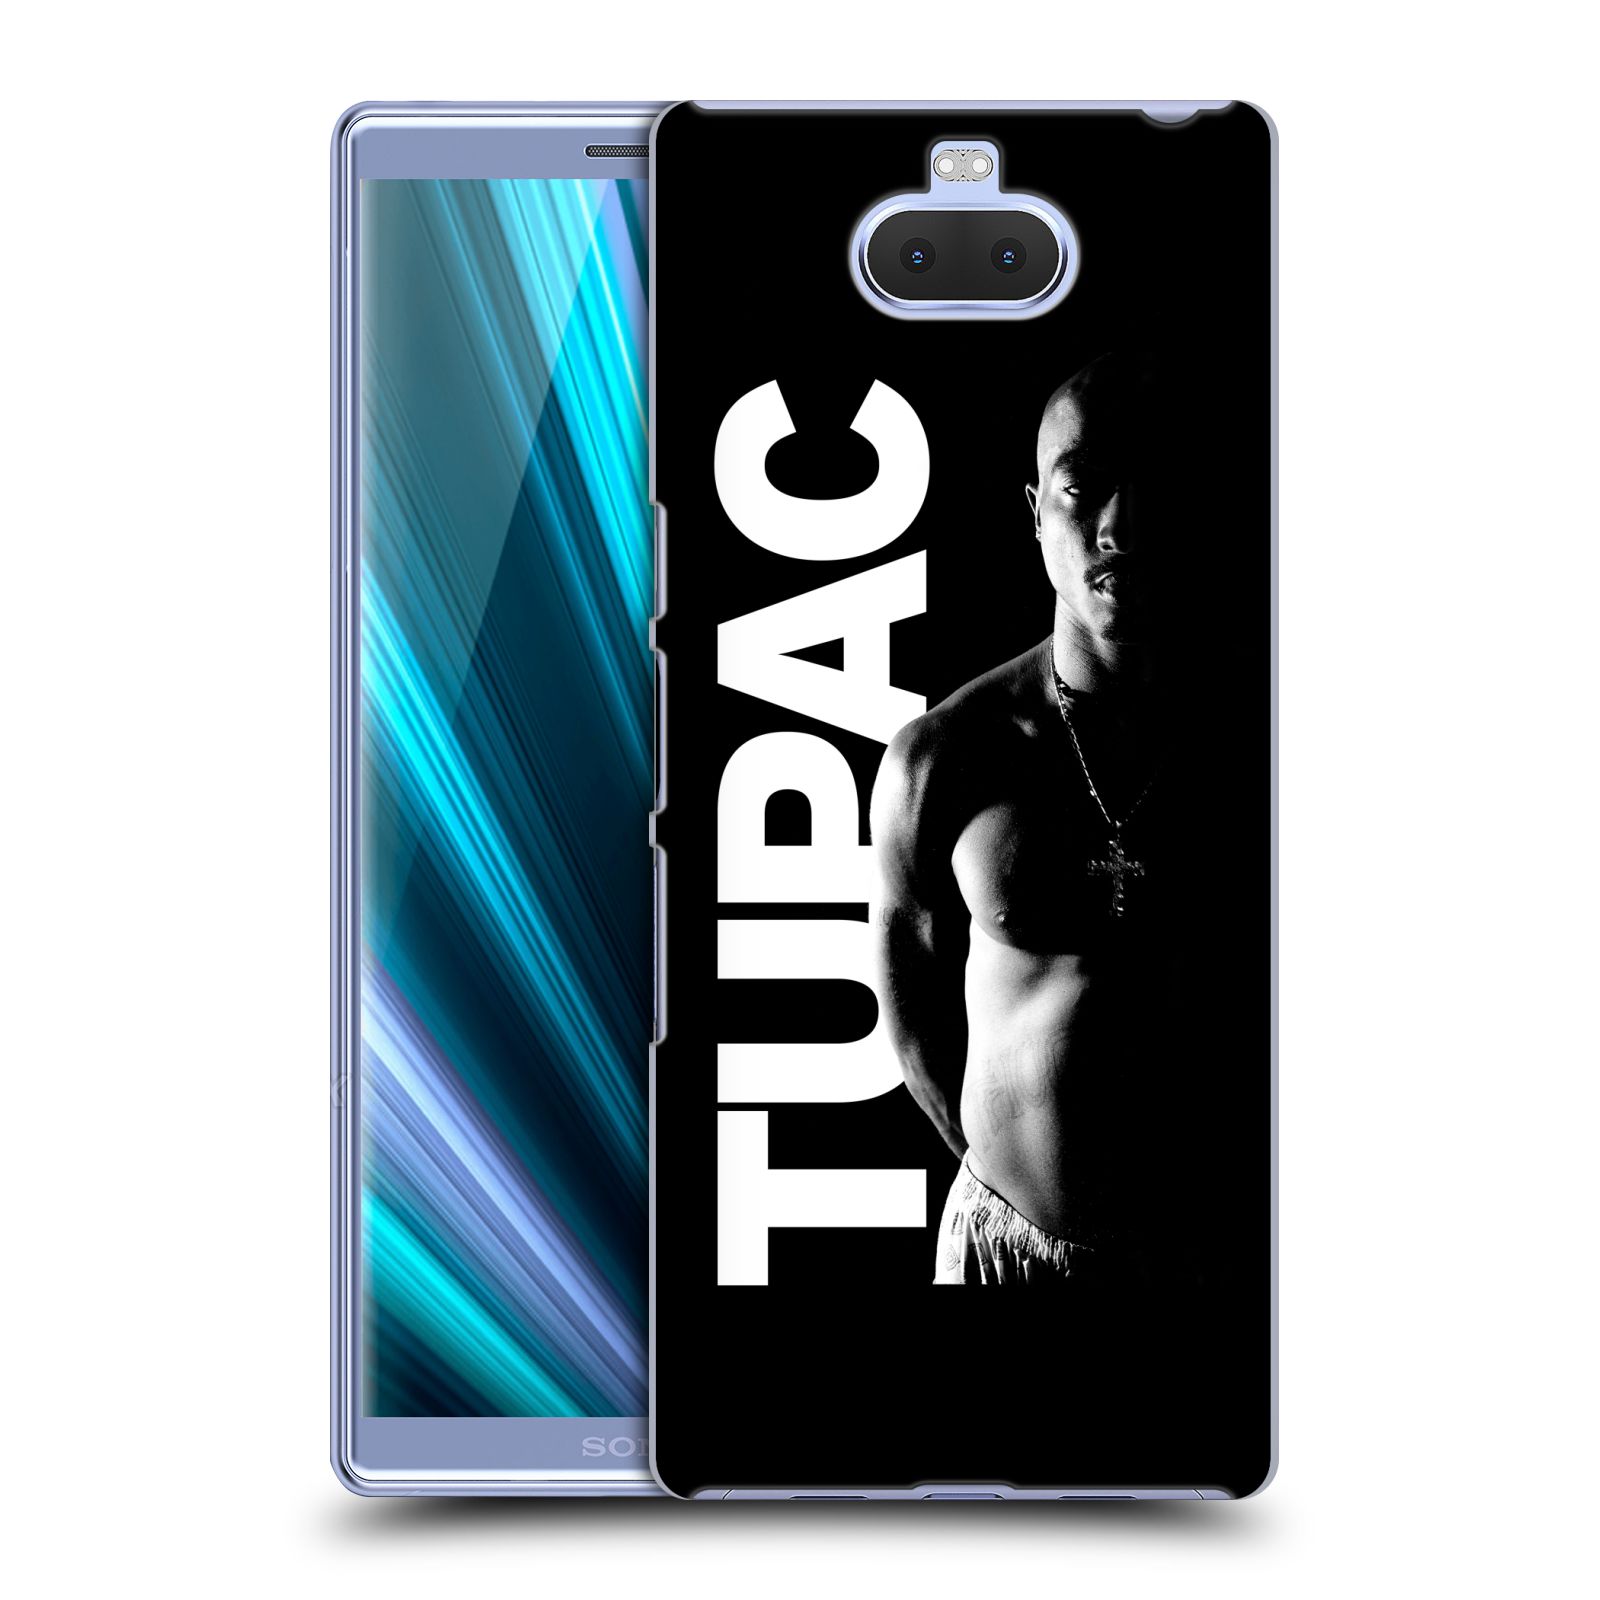 Pouzdro na mobil Sony Xperia 10 - Head Case - Zpěvák rapper Tupac Shakur 2Pac bílý nadpis